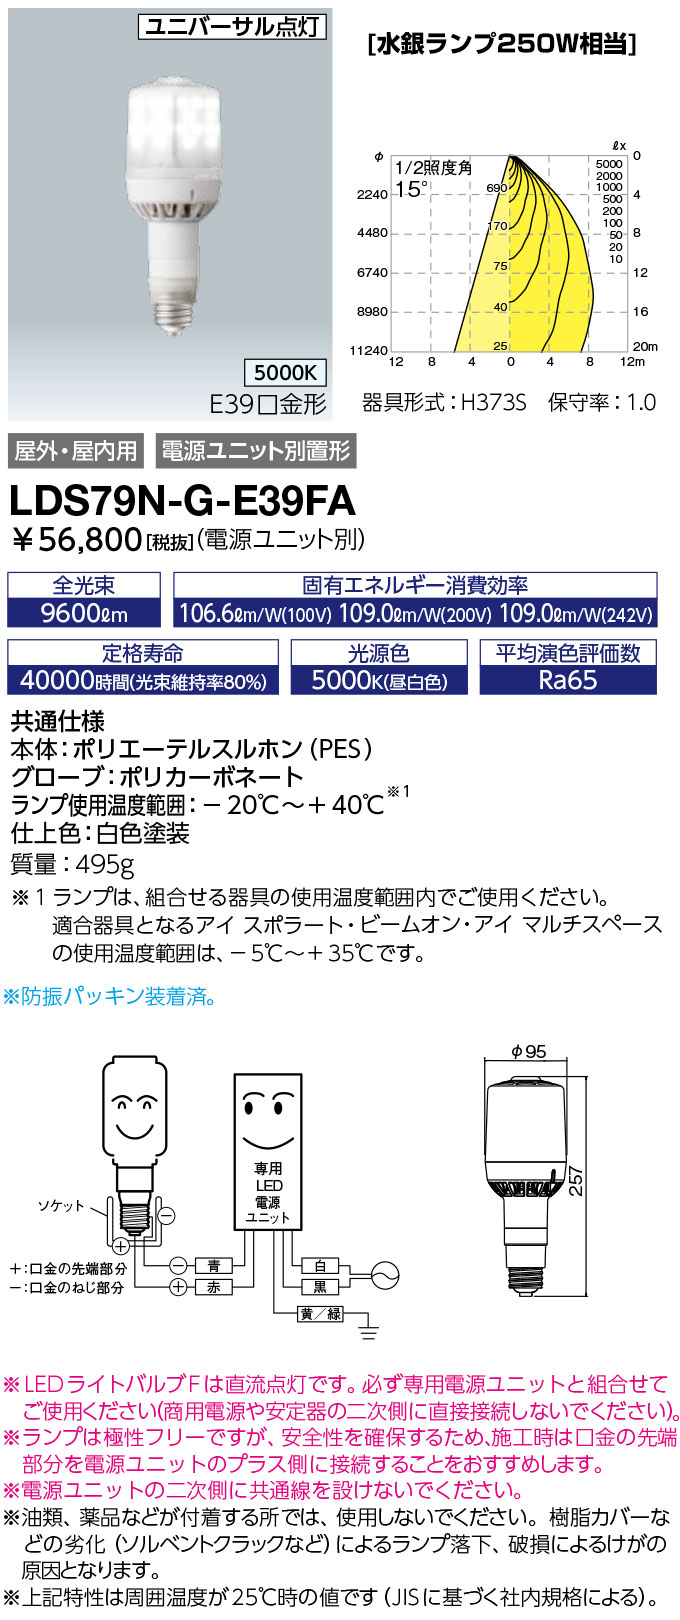 LDS79N-G-E39FAレディオック LEDライトバルブF水銀ランプ250W相当 極性フリー E39口金 79W 昼白色岩崎電気 ランプ